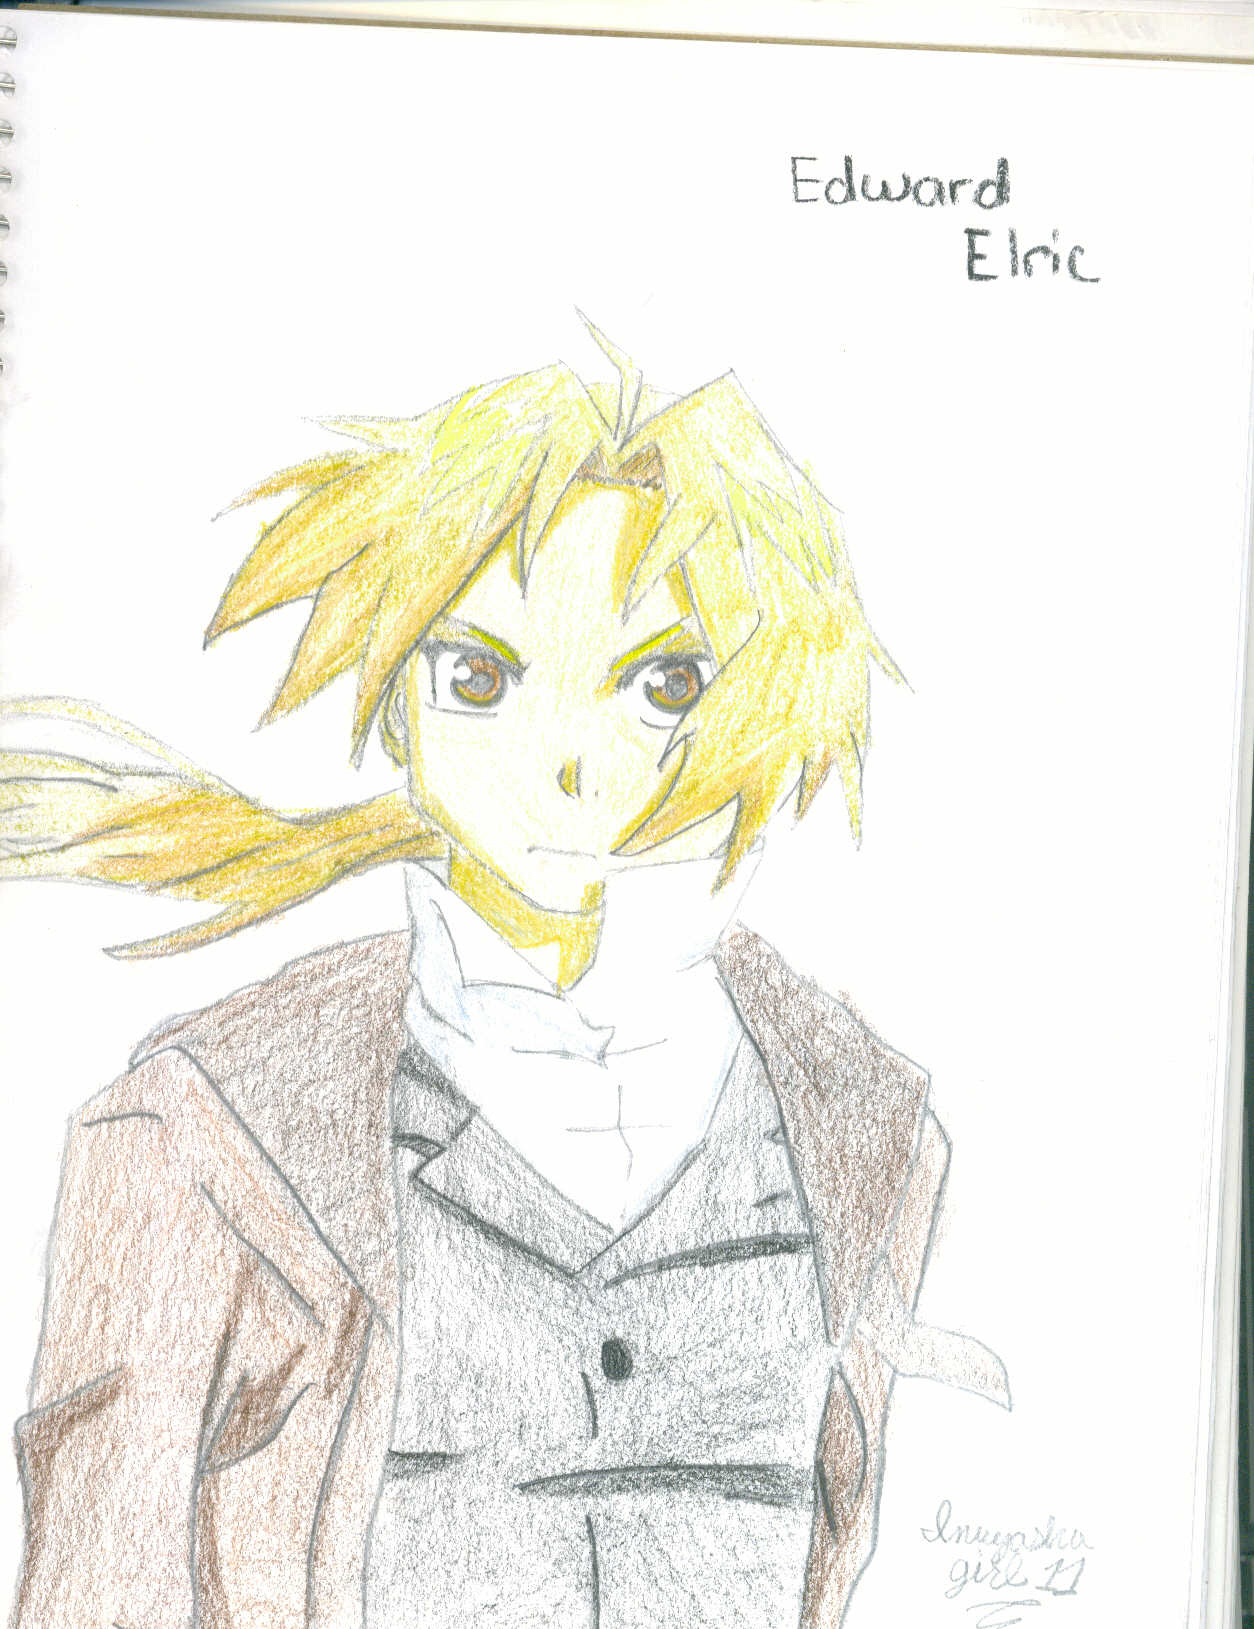 Edward Elric by inuyasha_girl11